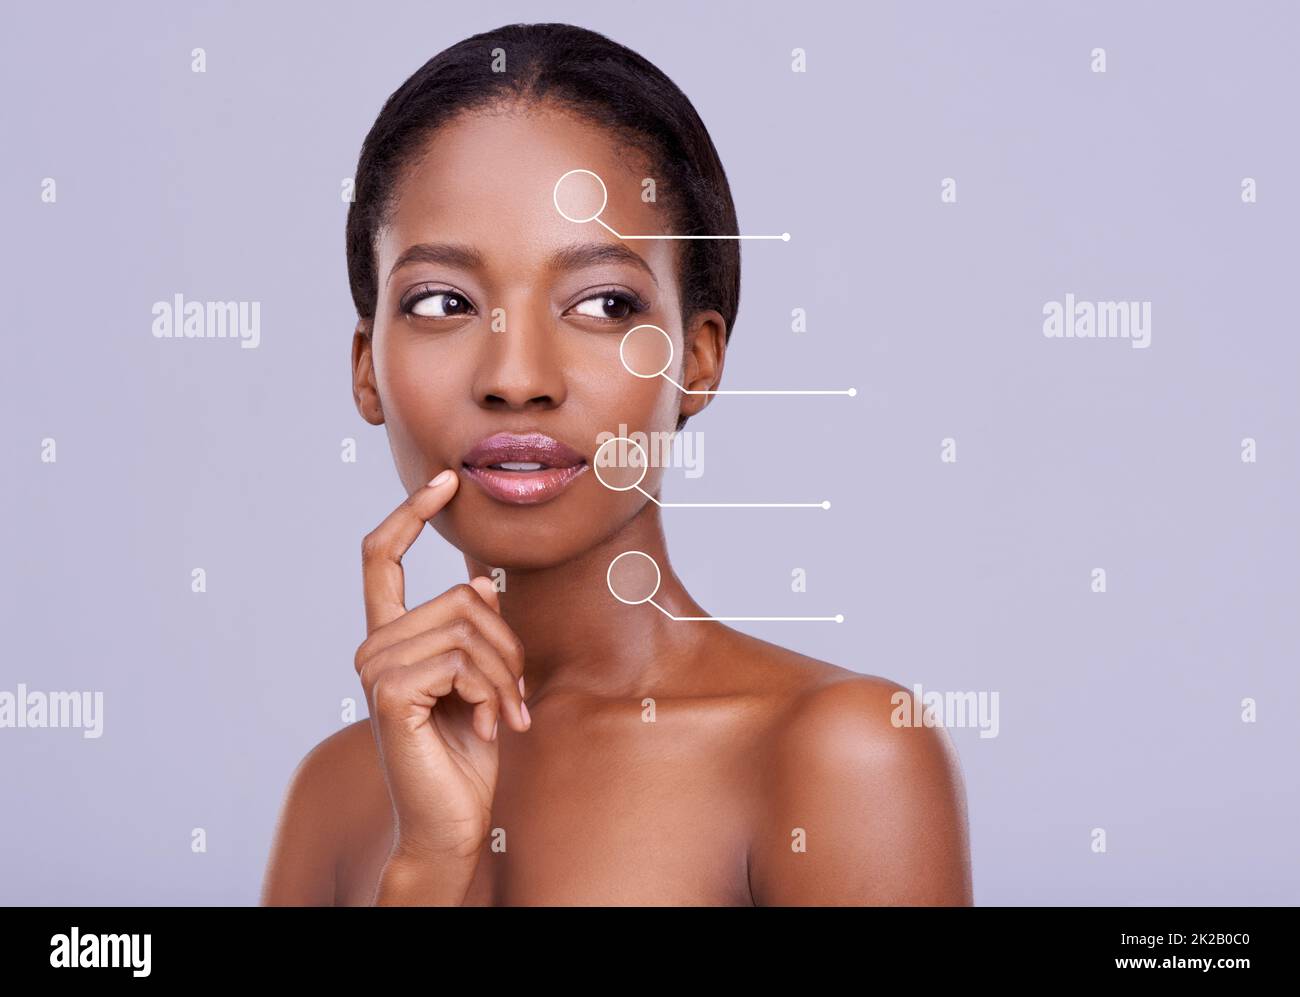 Prendendosi cura della sua pelle. Scatto corto di una bella donna africana su sfondo viola. Foto Stock